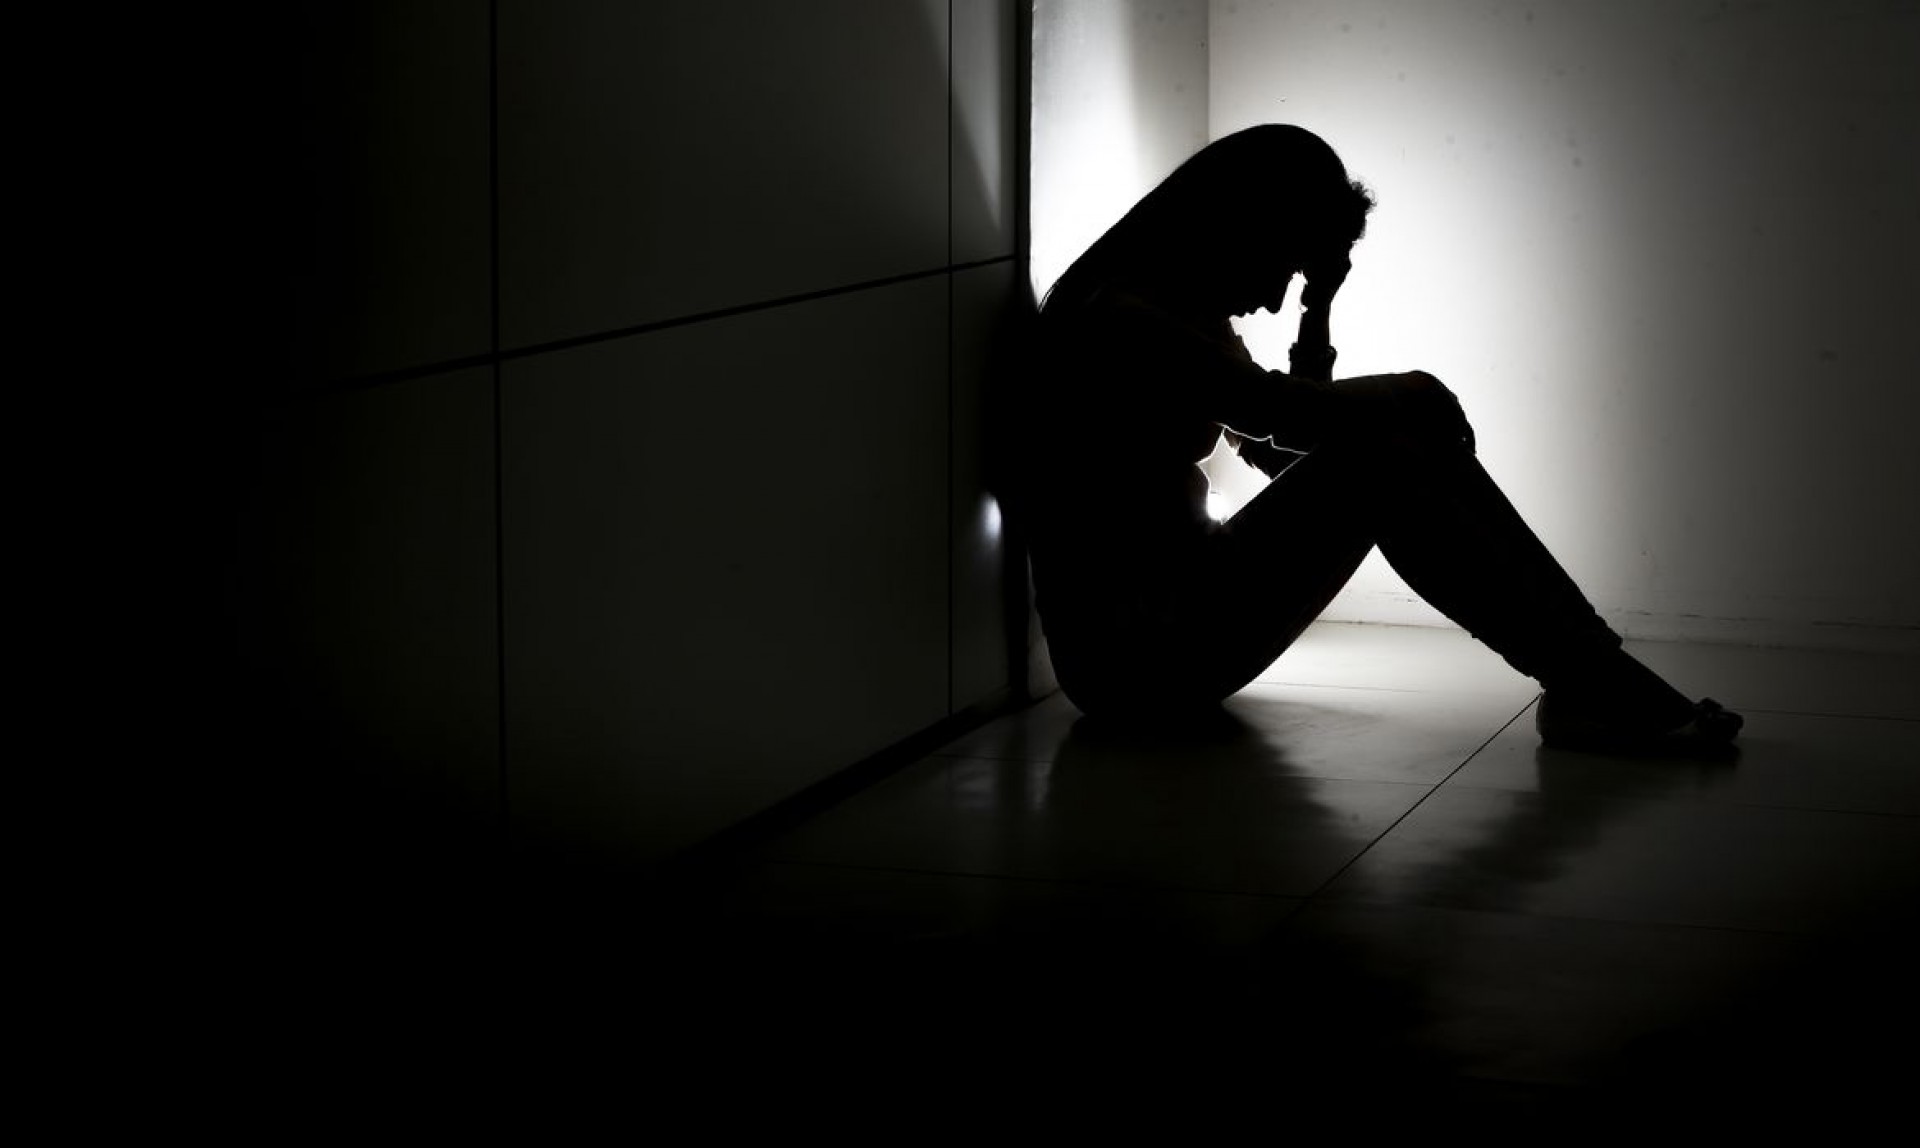 Sintomas de depressão e ansiedade atingiram em maior proporção o público jovem, segundo pesquisas (Foto: Marcelo Camargo/Agência Brasil)